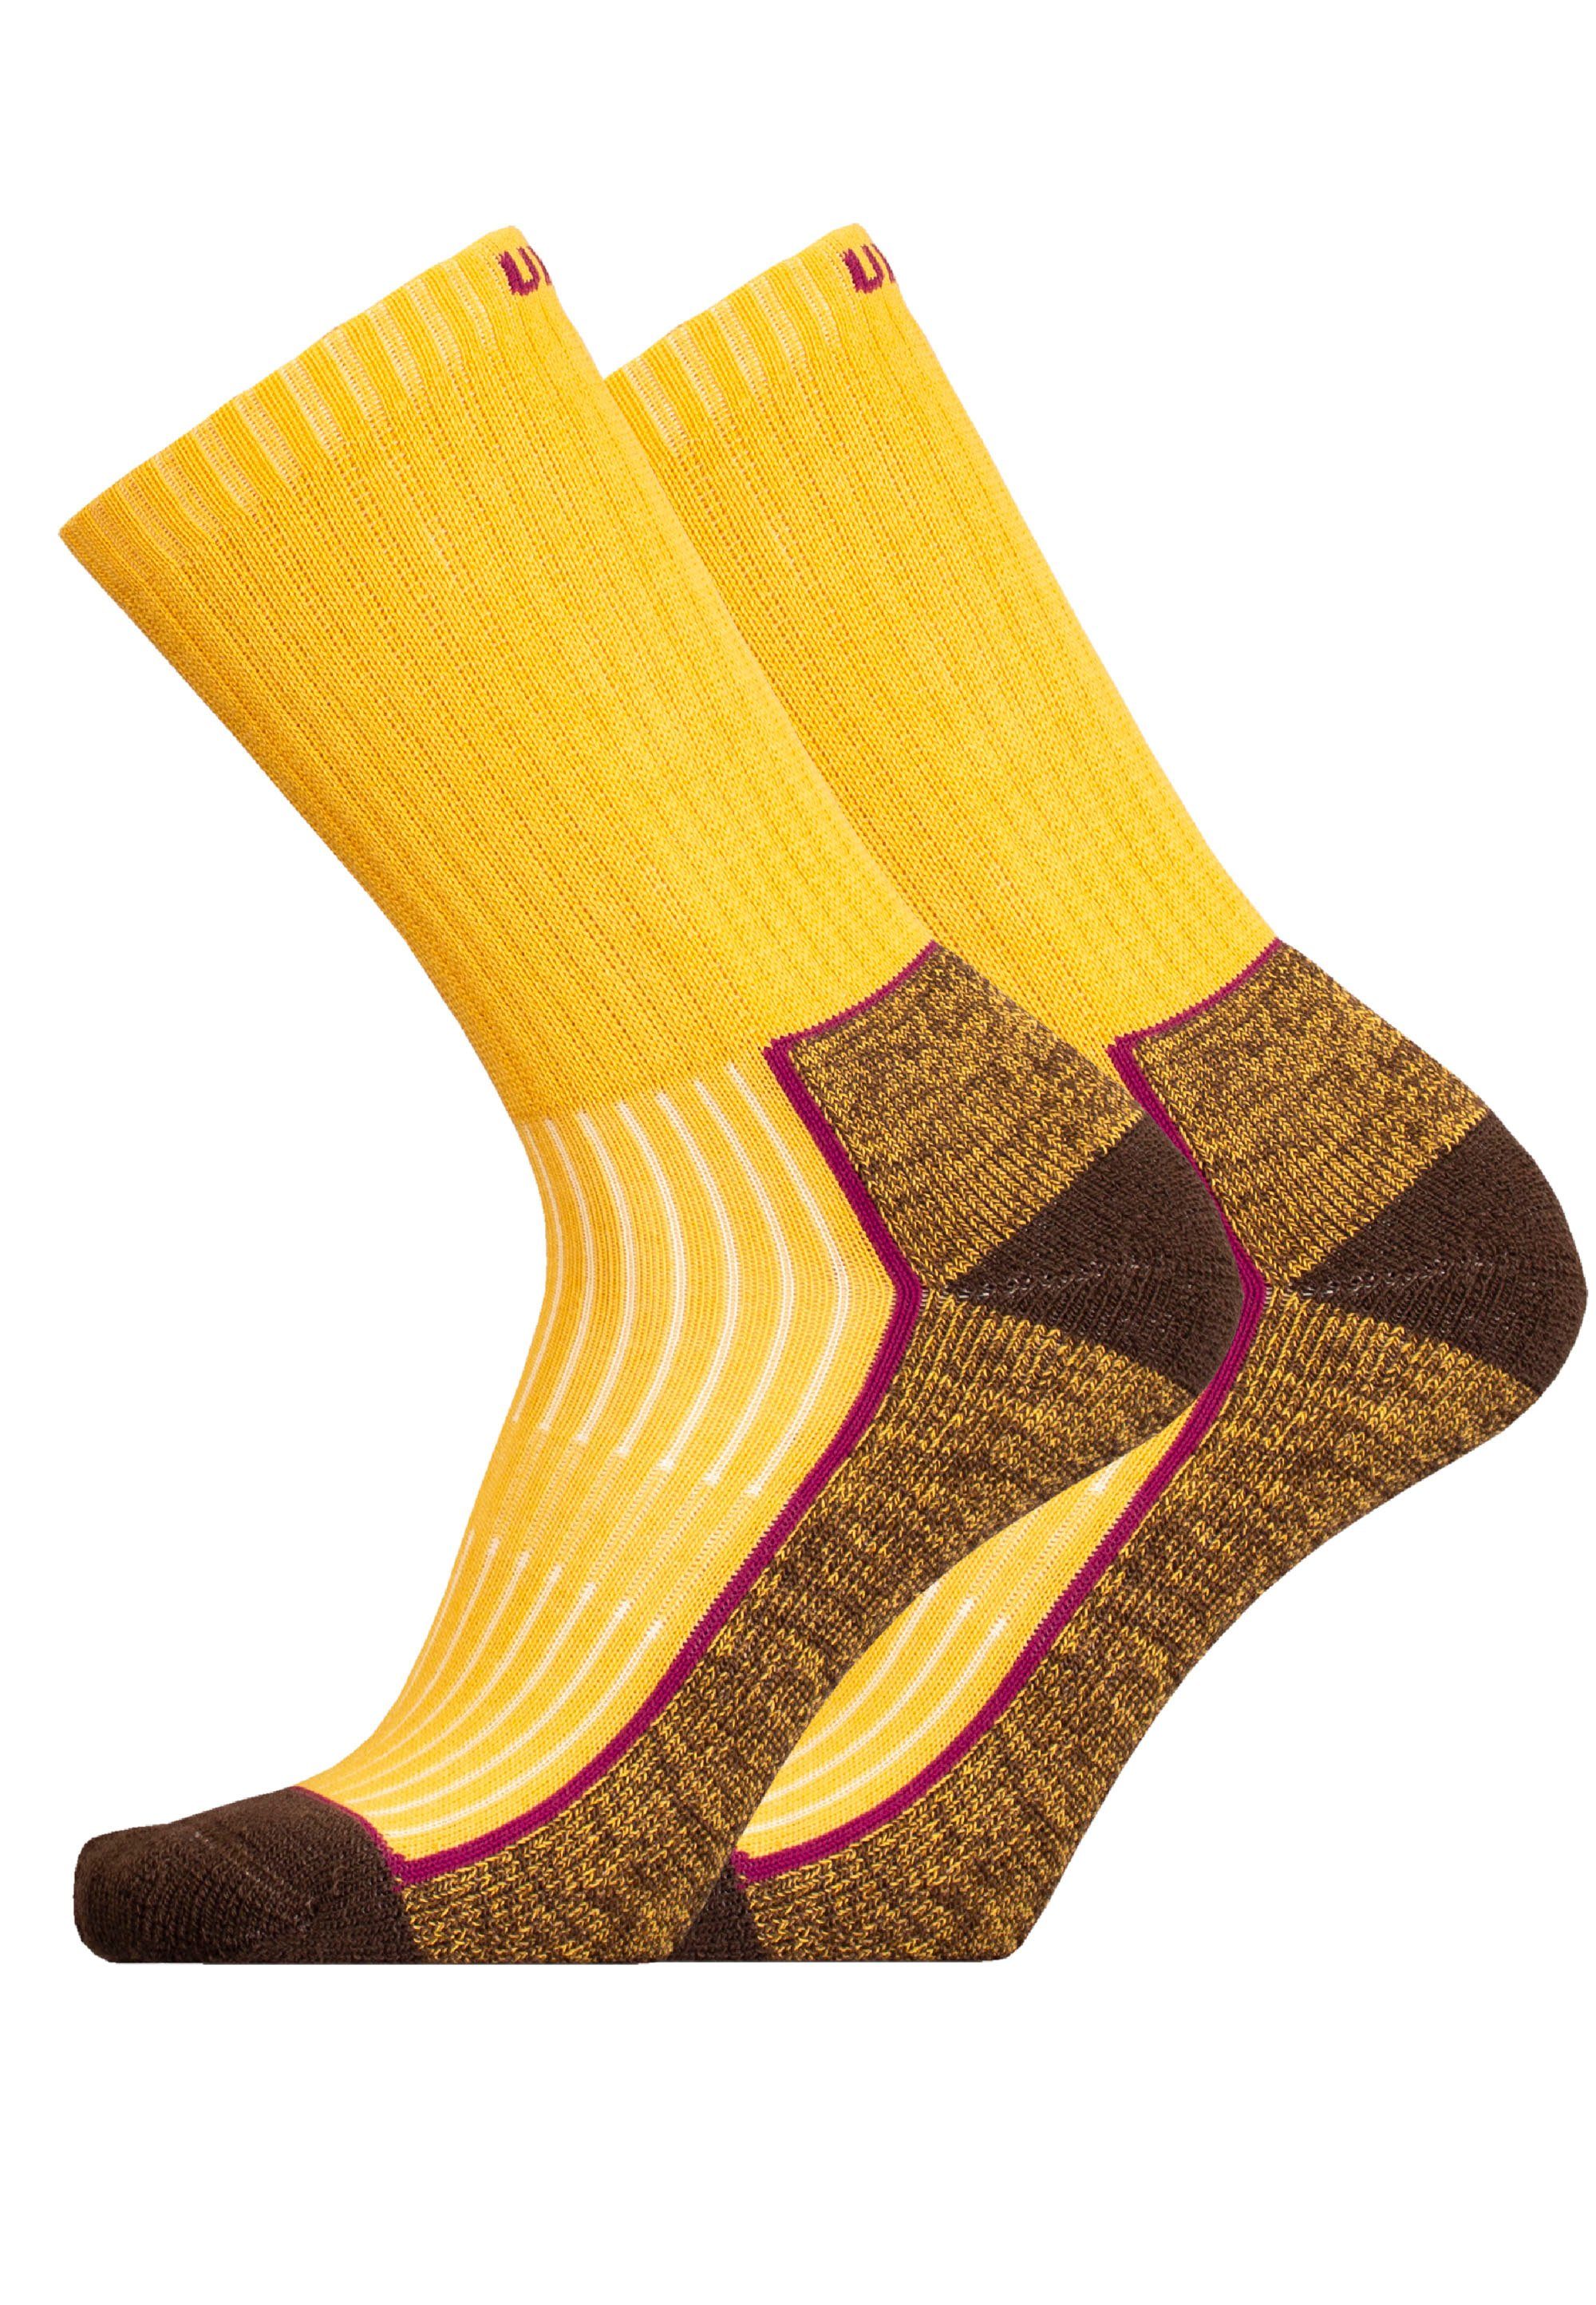 UphillSport Socken SAANA (2-Paar) im 2er-Pack mit Flextech-Struktur gelb